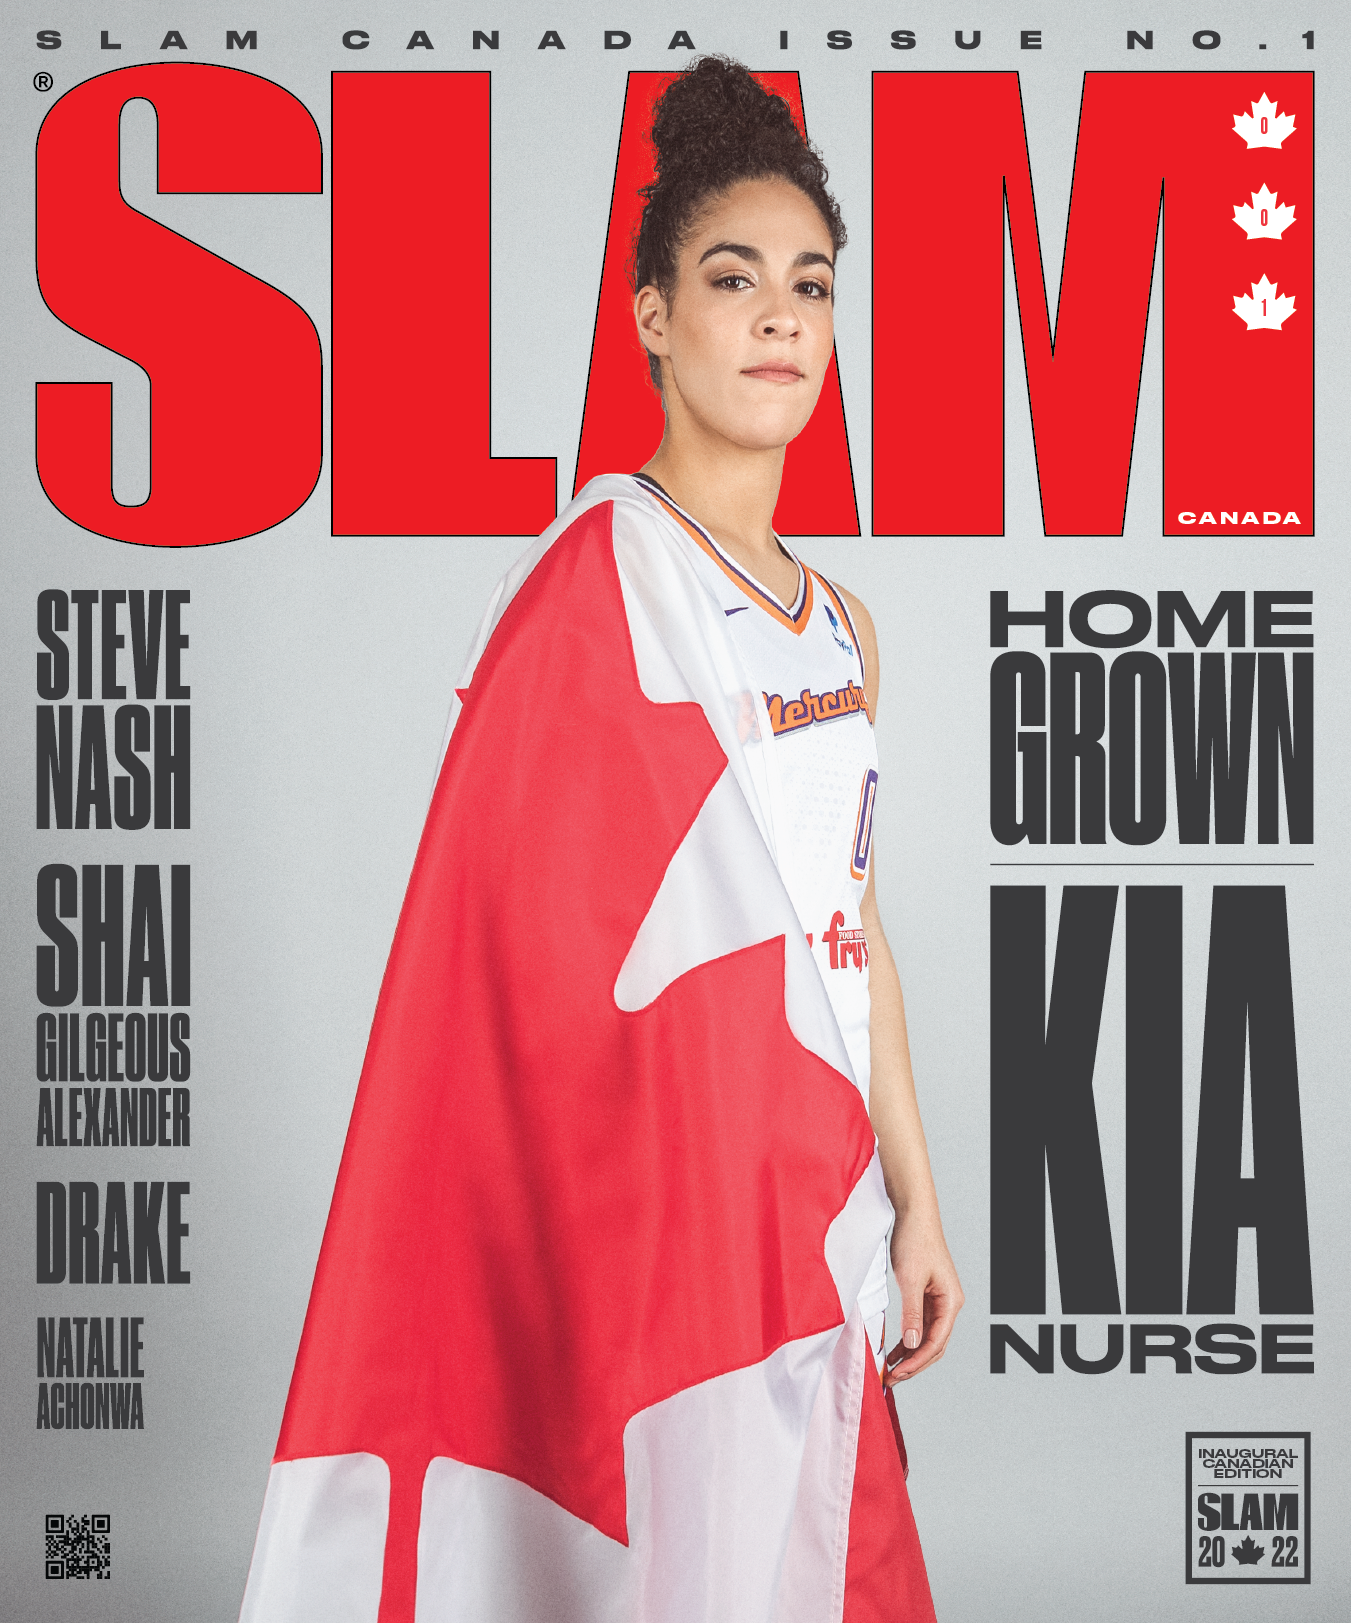 Steve Nash, Kia Nurse and Shai Gilgeous-Alexander Cover SLAM Canada 1